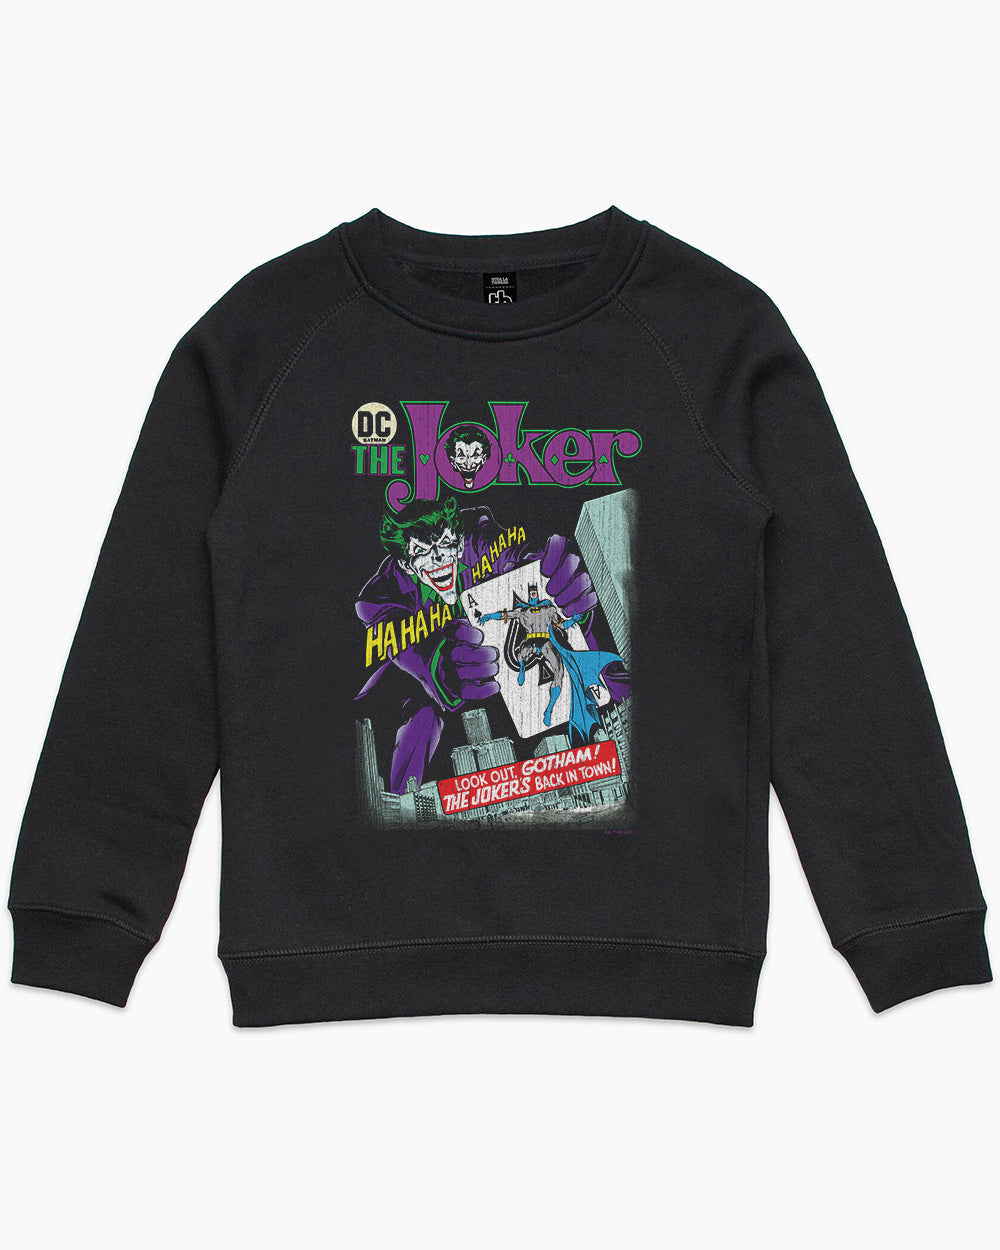 The Joker's Back In Town Kids Jumper Australia Online #colour_black